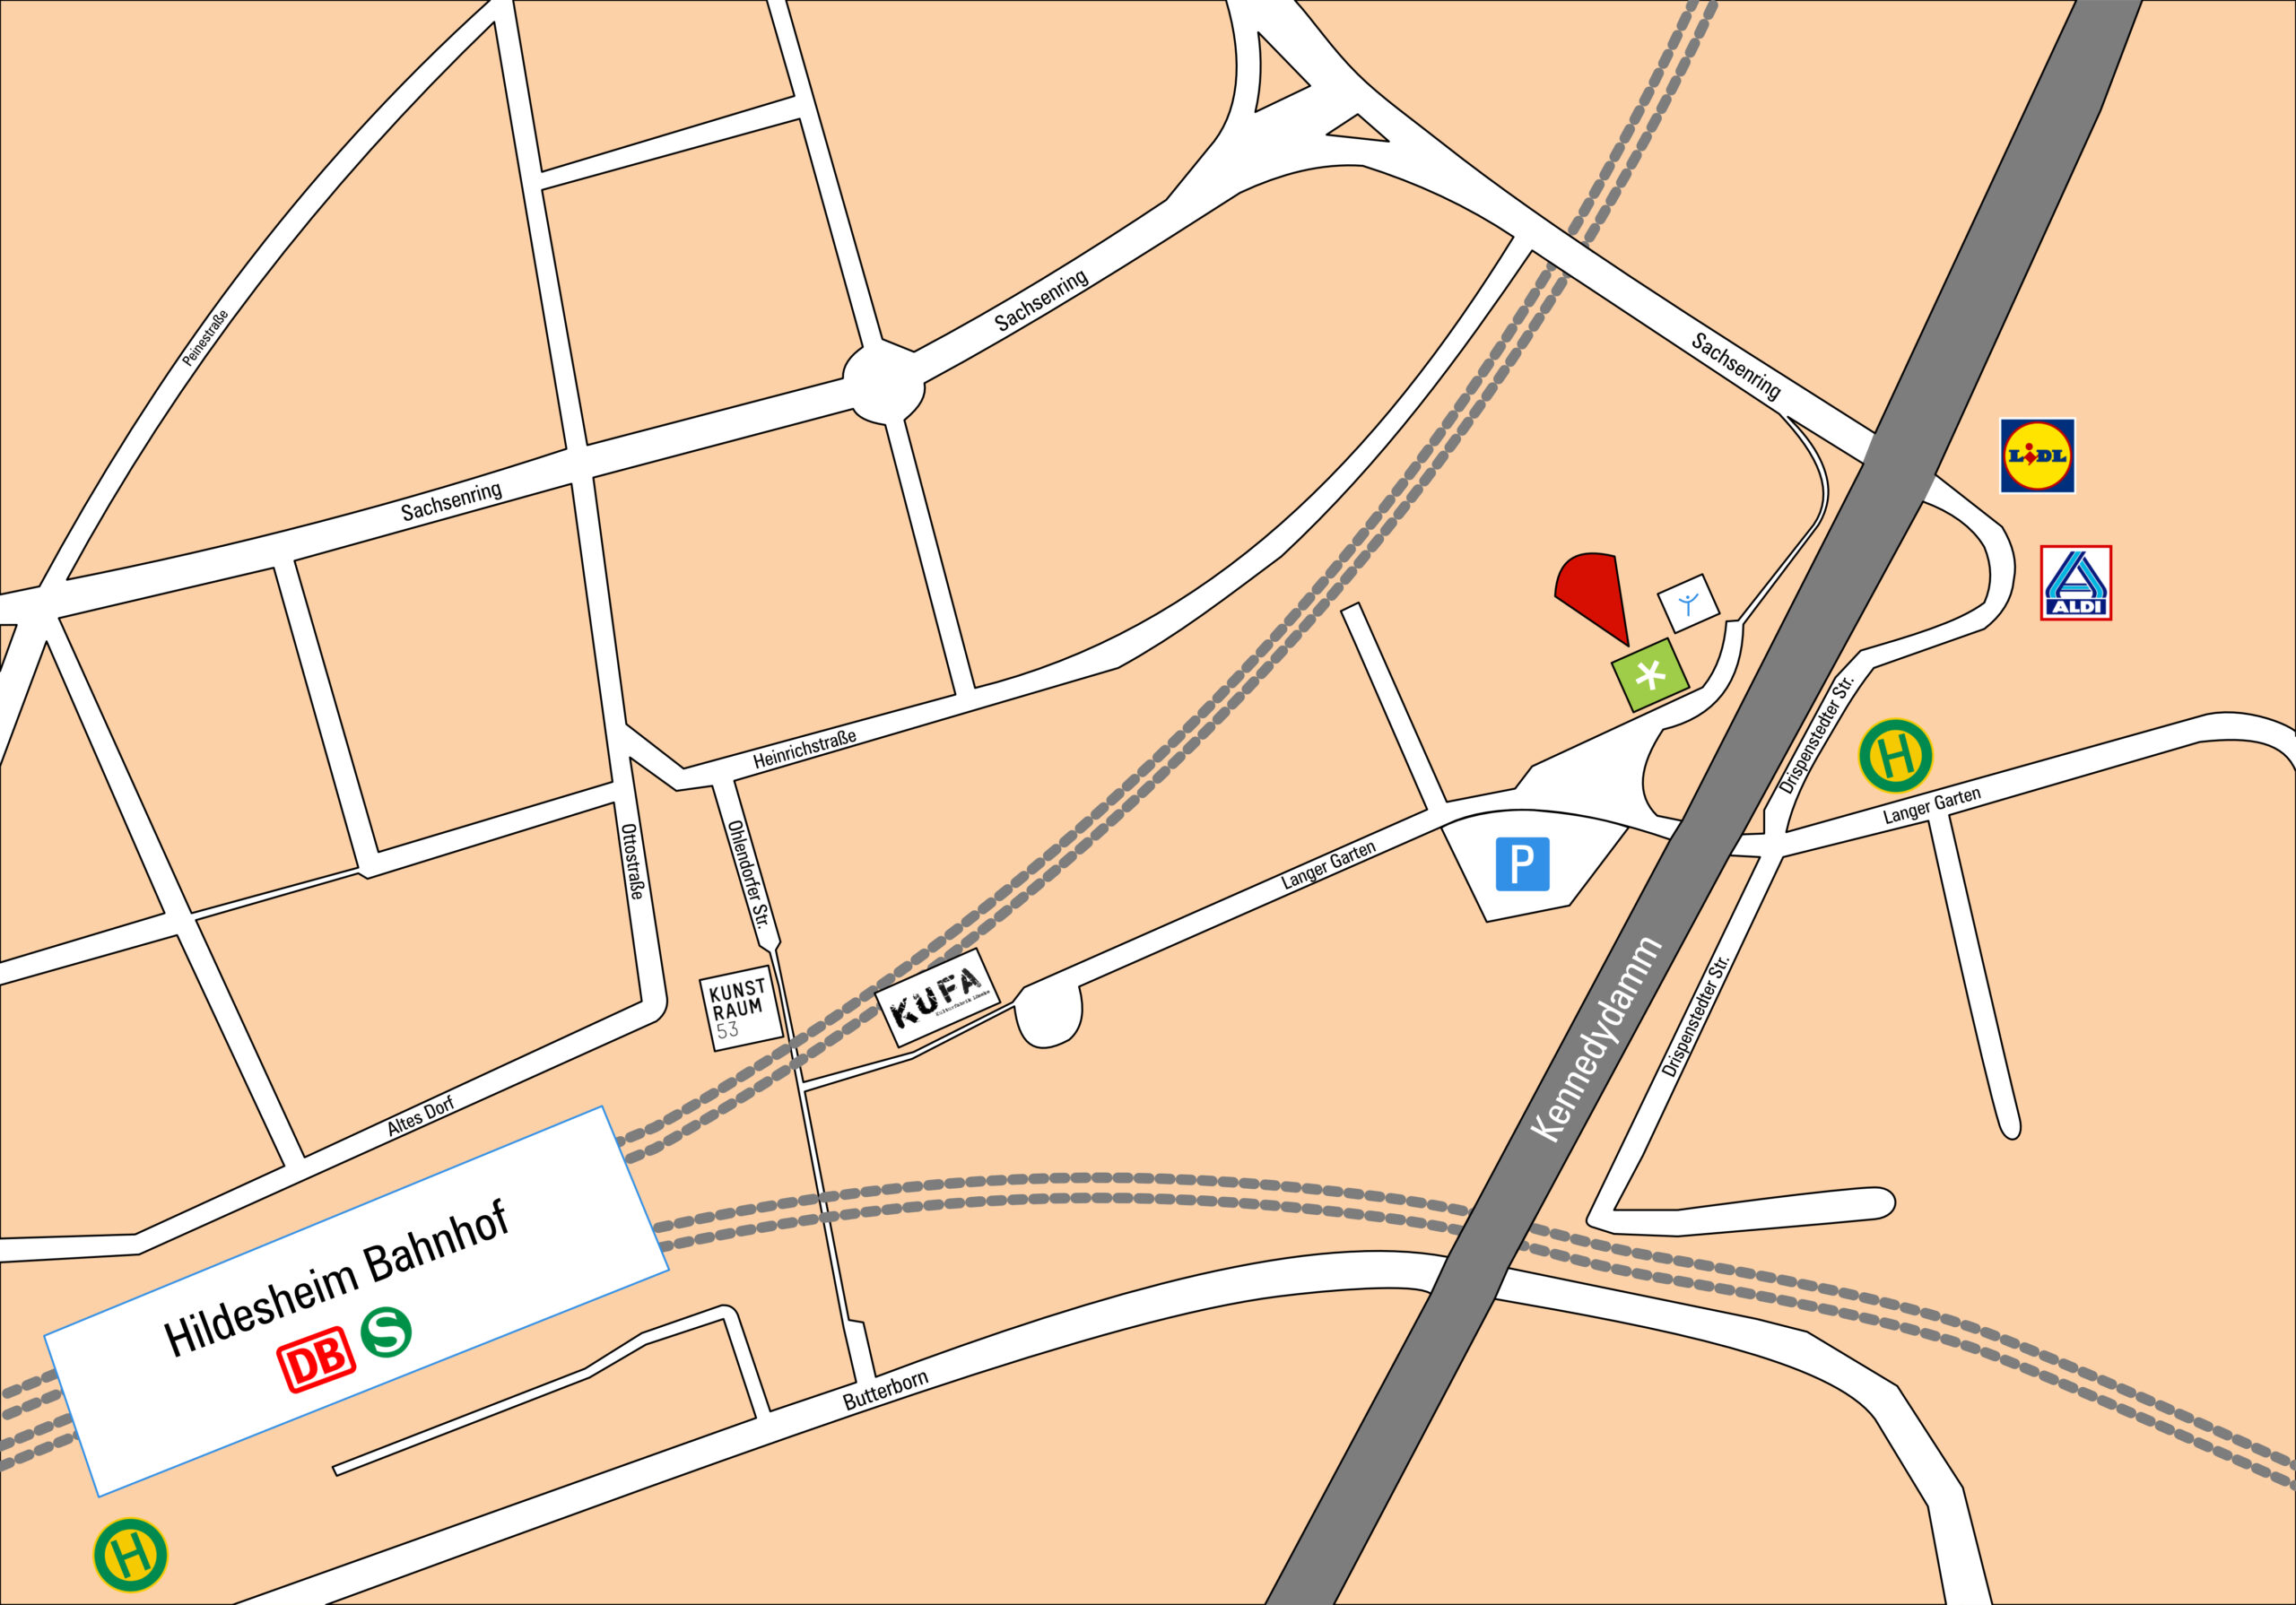 Kartenausschnitt der Hildesheimer Nordstadt. Ein roter Pfeil zeigt auf die Stelle, wo das Theaterhaus ist.